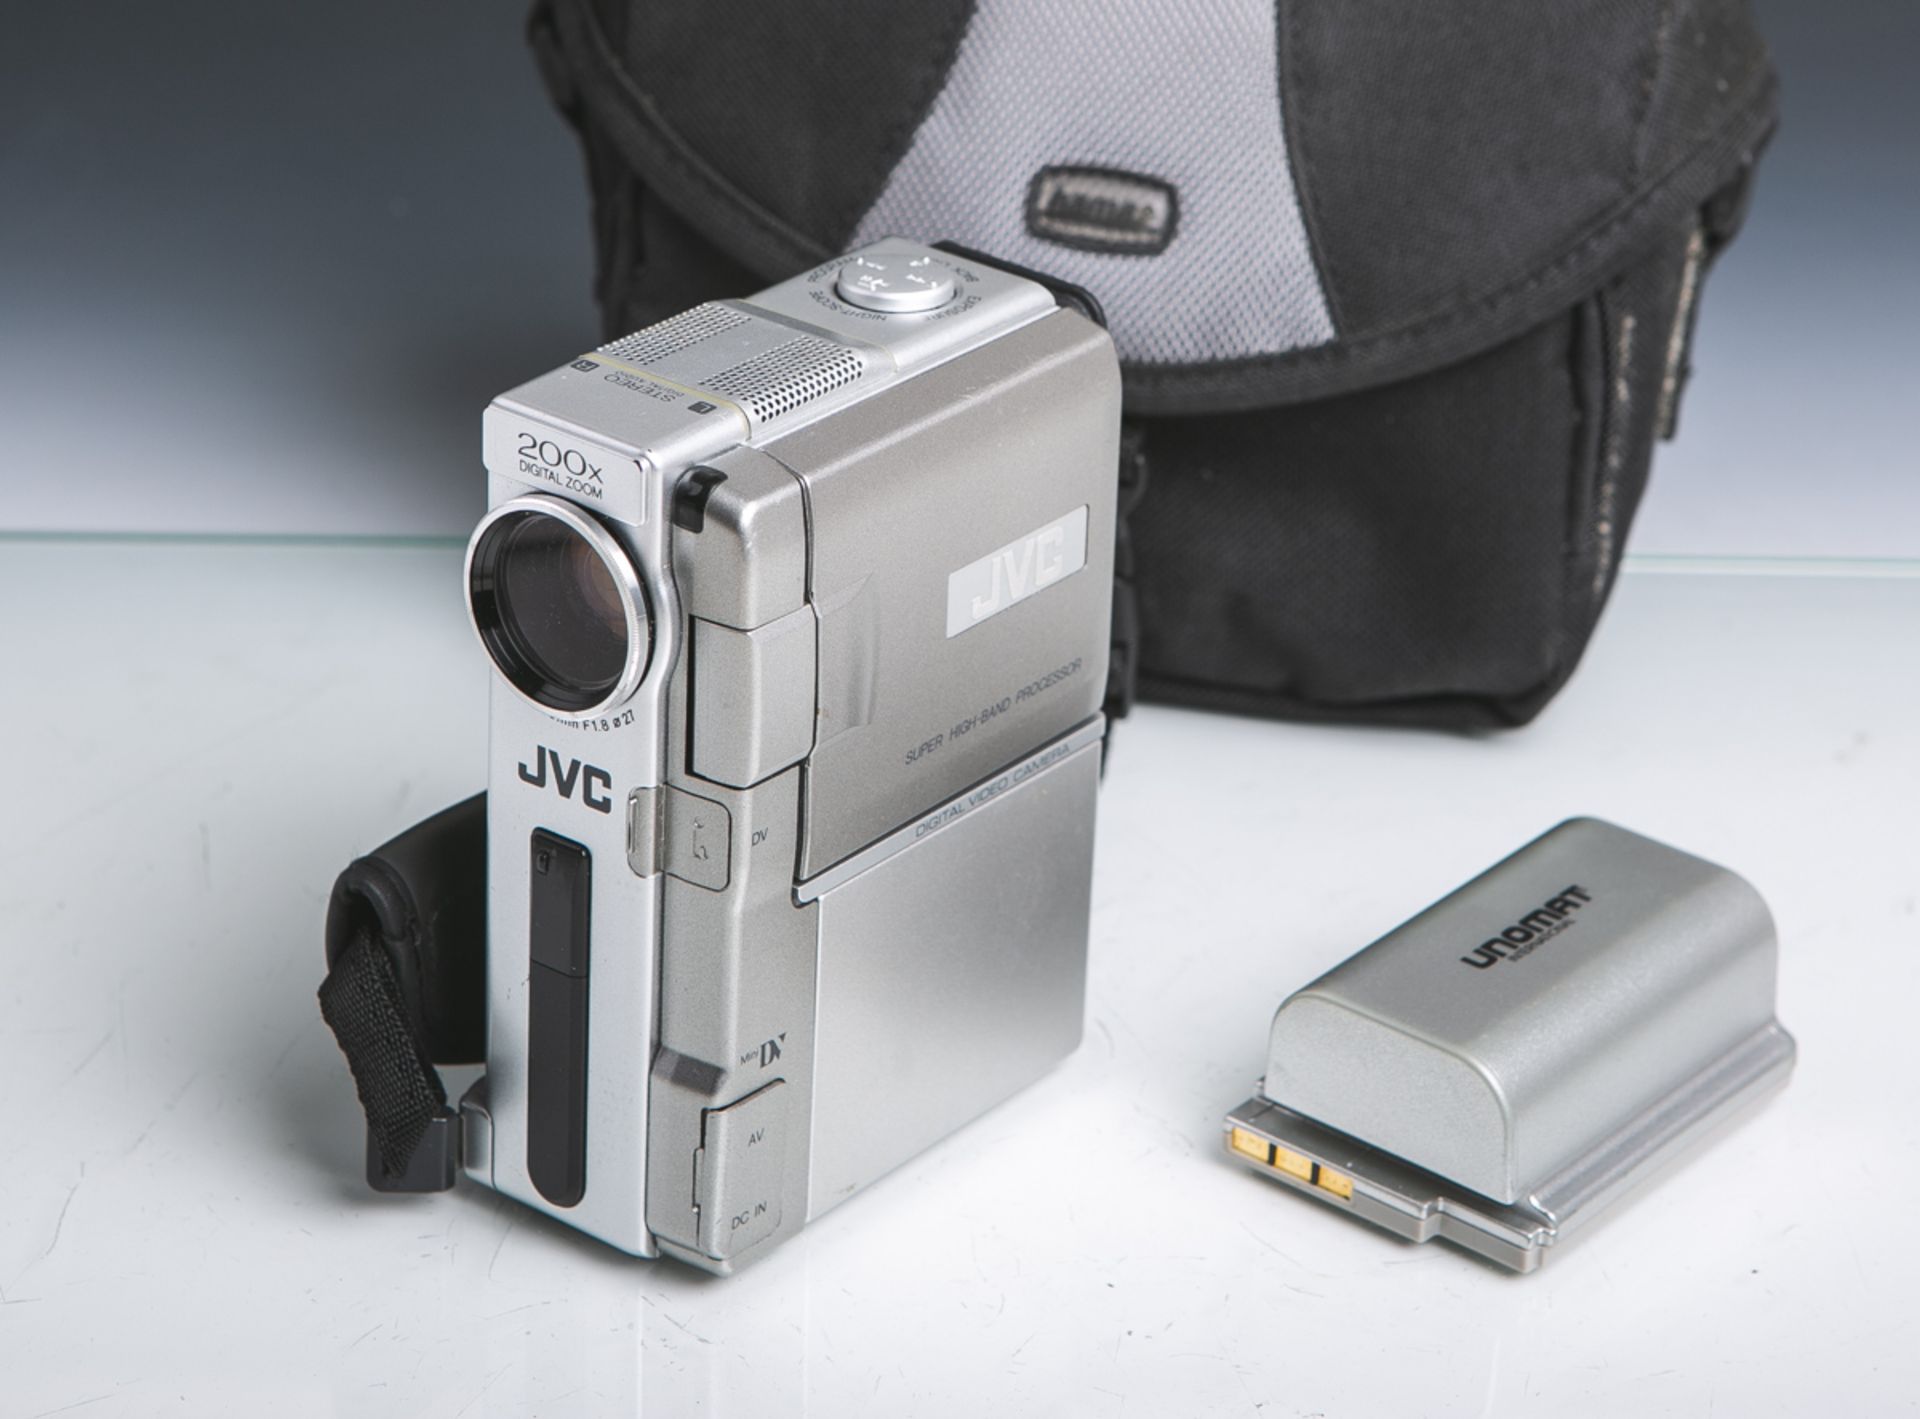 Filmkamera "GR-DVX44E" von JVC, 200x Digital Zoom, Nr. 146B0395, inkl. Akku "LI-7XJ" von